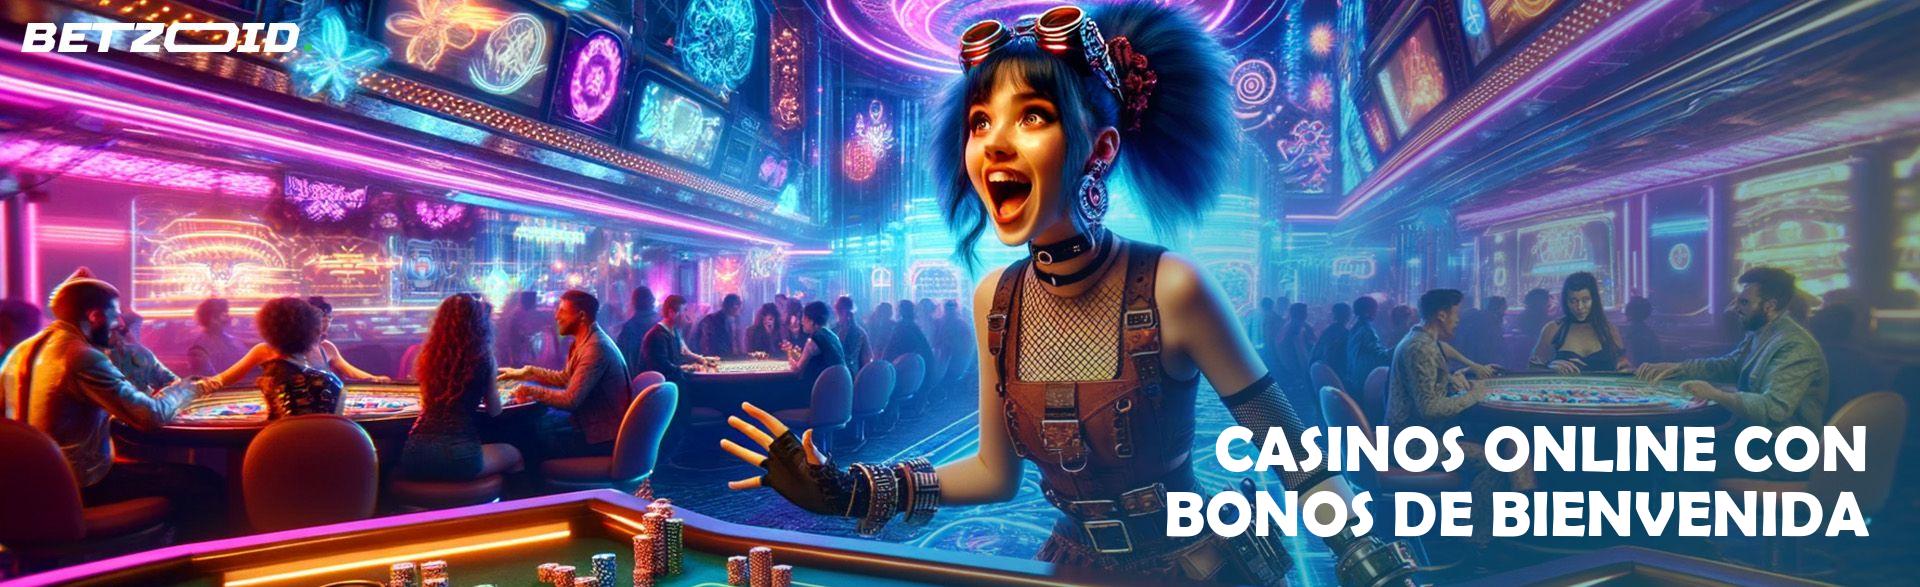 Casinos Online con Bonos de Bienvenida.